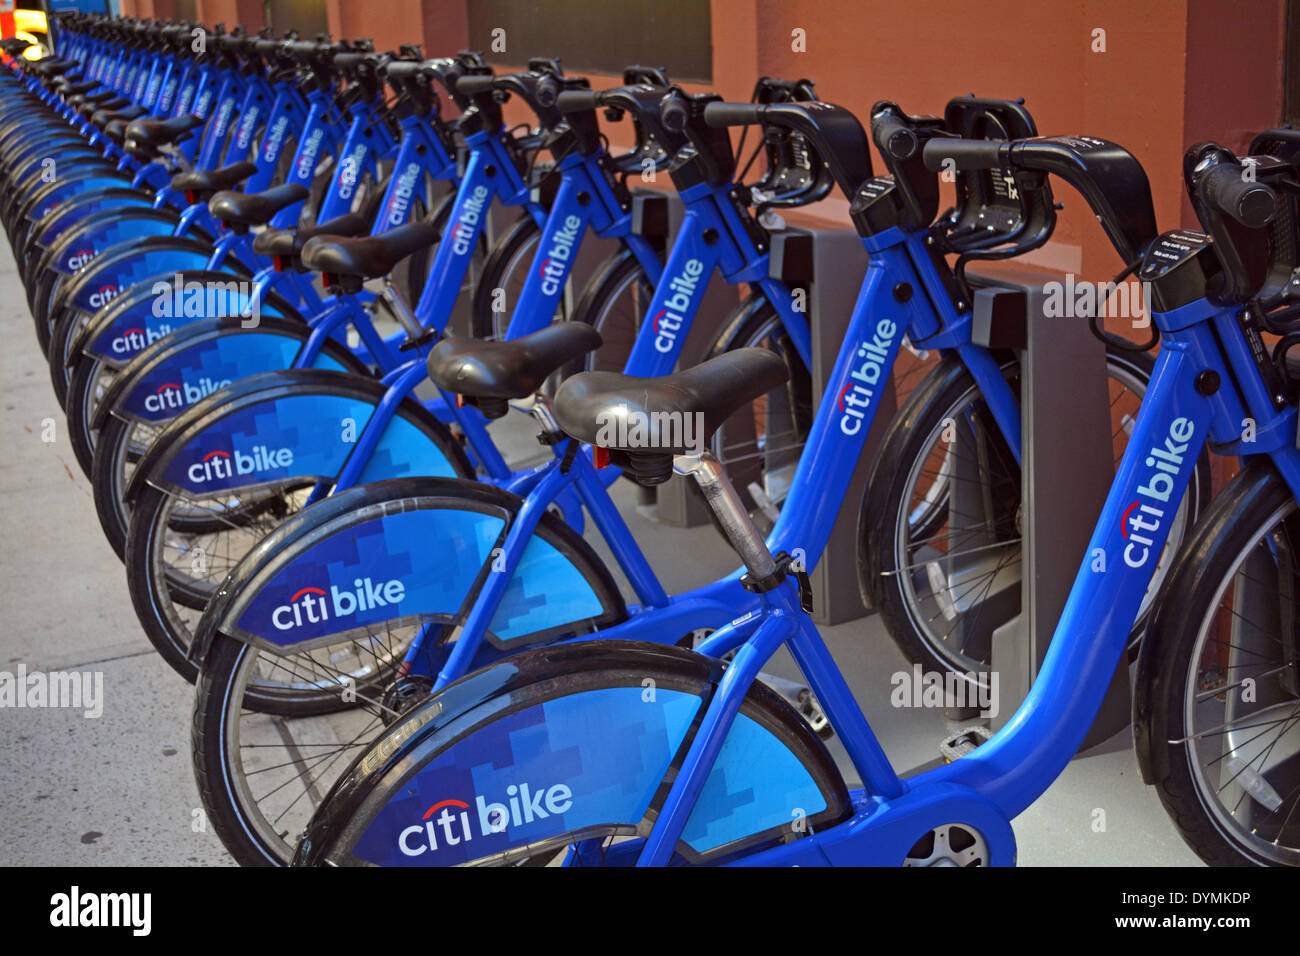 L'une des 330 stations d'accueil pour la location de vélos Citi, New York City's programme de partage de vélos. Dans Greenwich Village. Banque D'Images